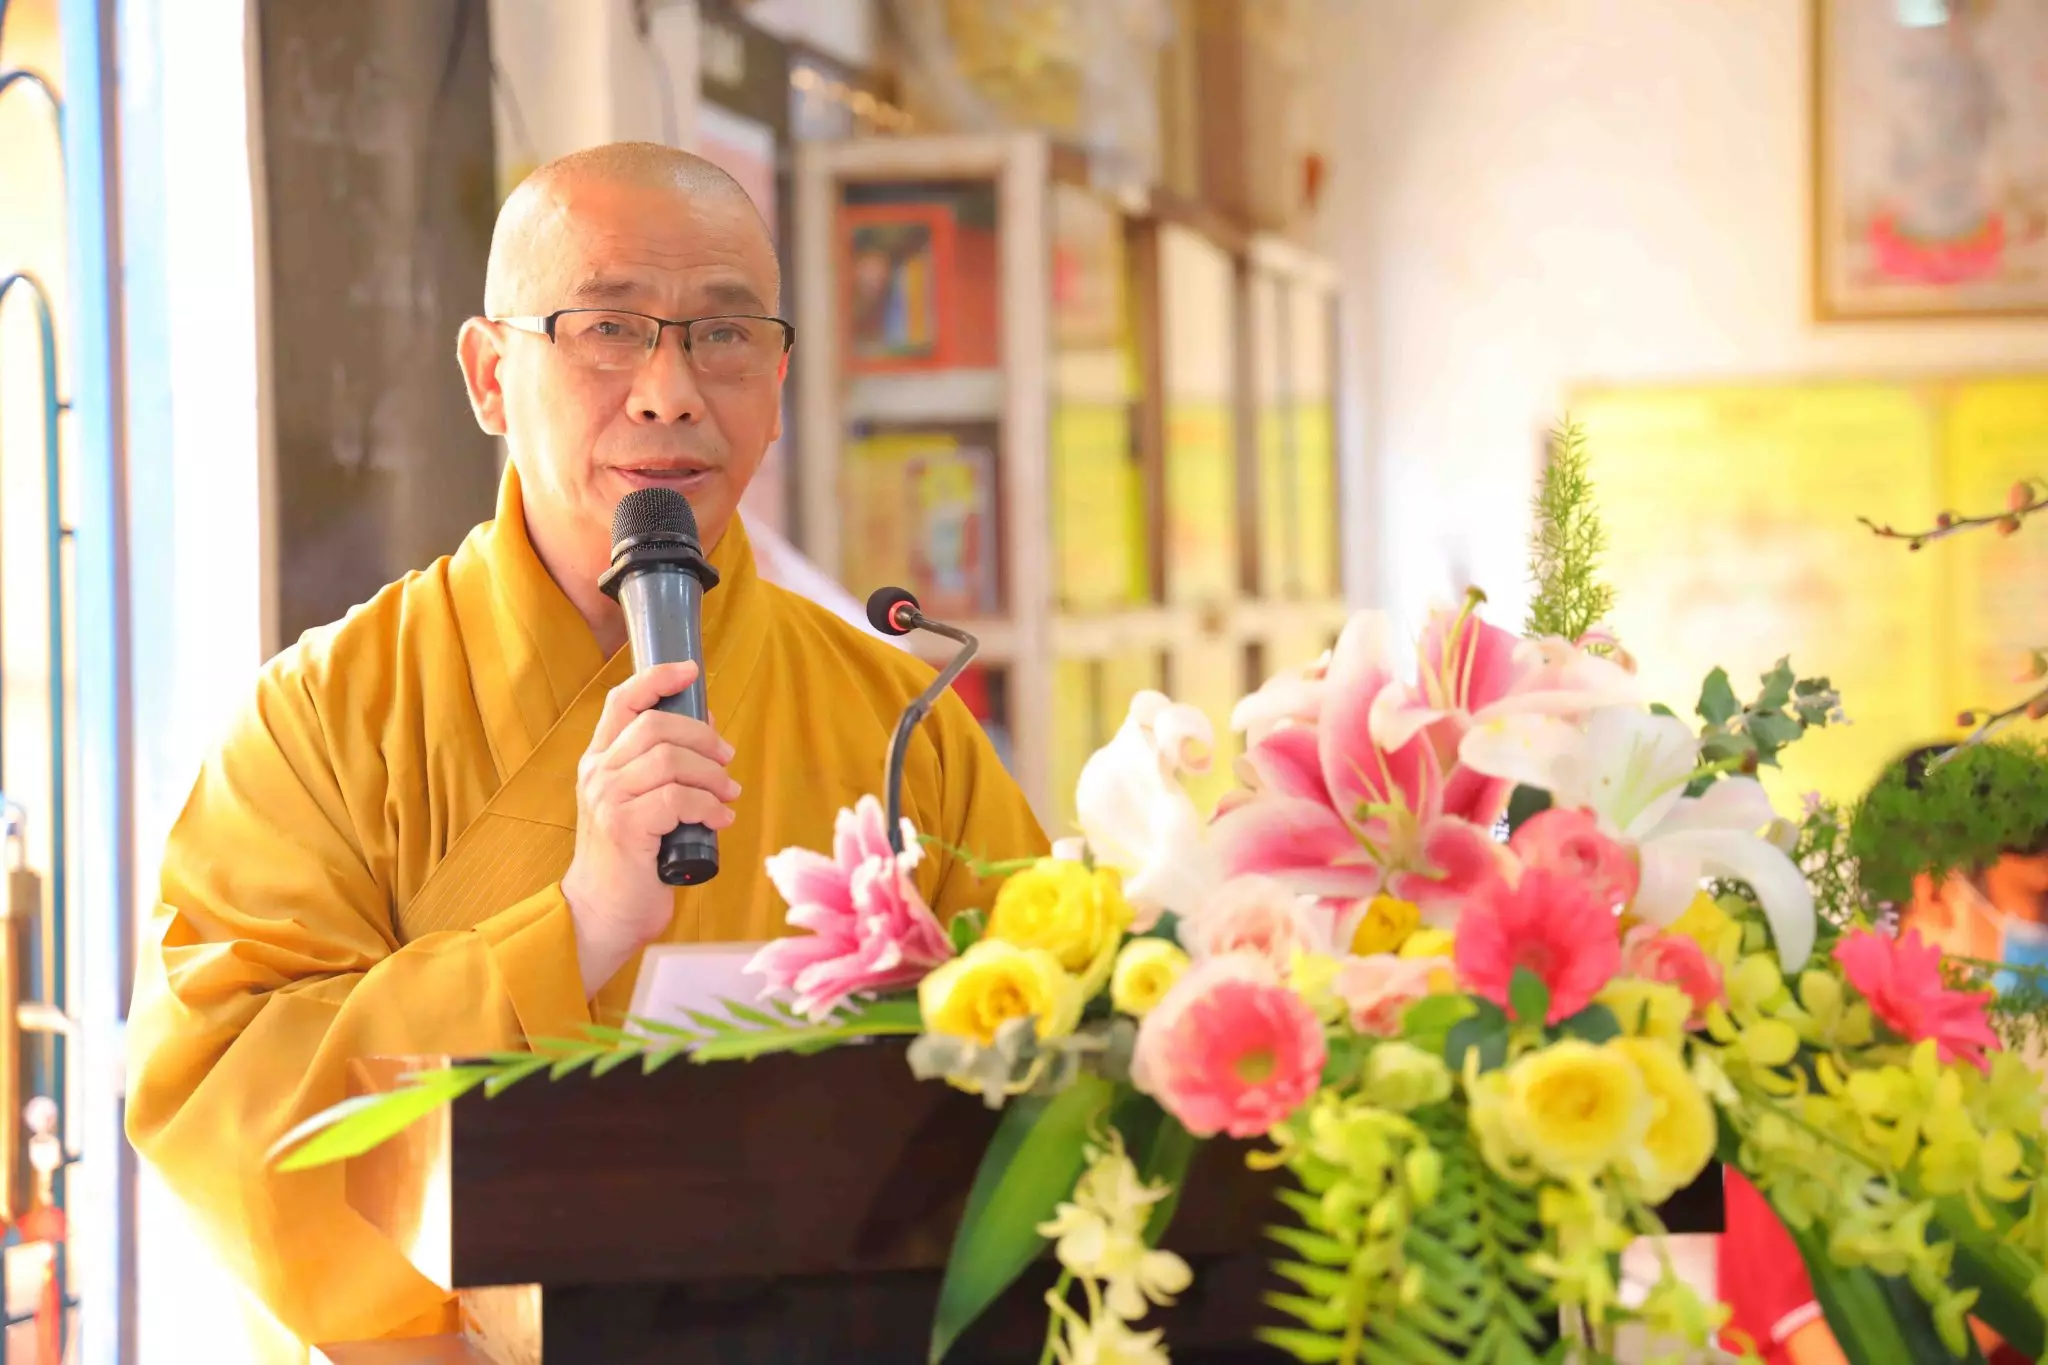 Công bố quyết định bổ nhiệm trụ trì chùa Pháp Vân, Bình Thạnh